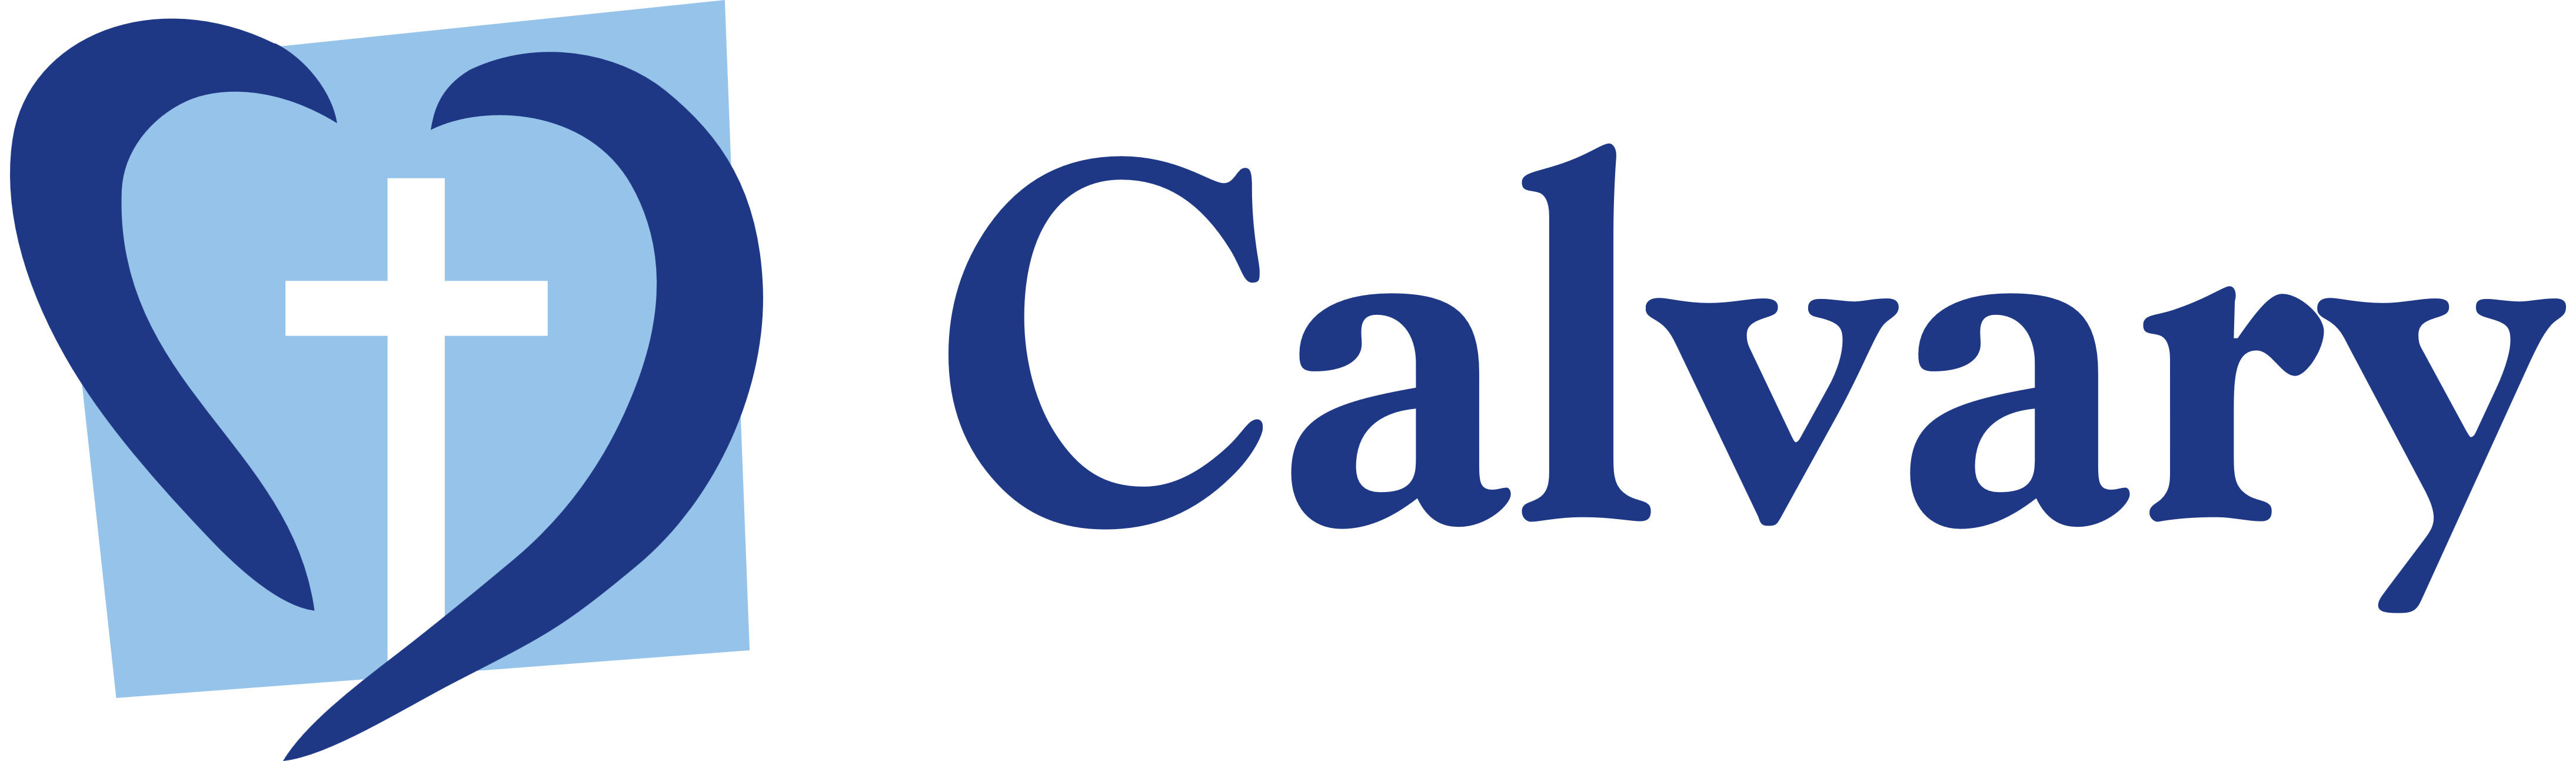 Calvary Logo - Calvary Health Care Bethlehem – Logos, brands and logotypes